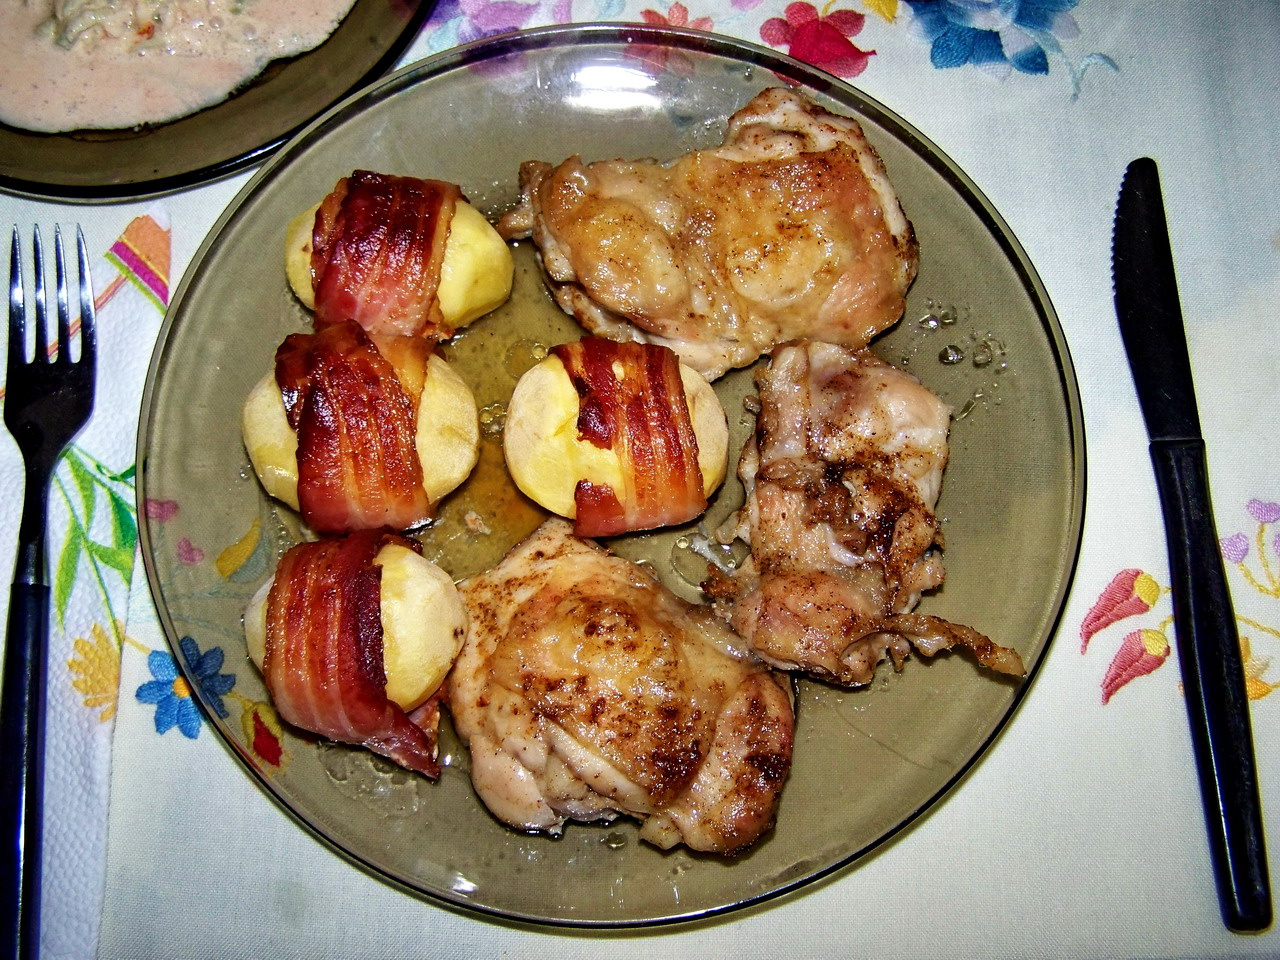 ennivaló, grilles csirkecomb baconos burgonyával